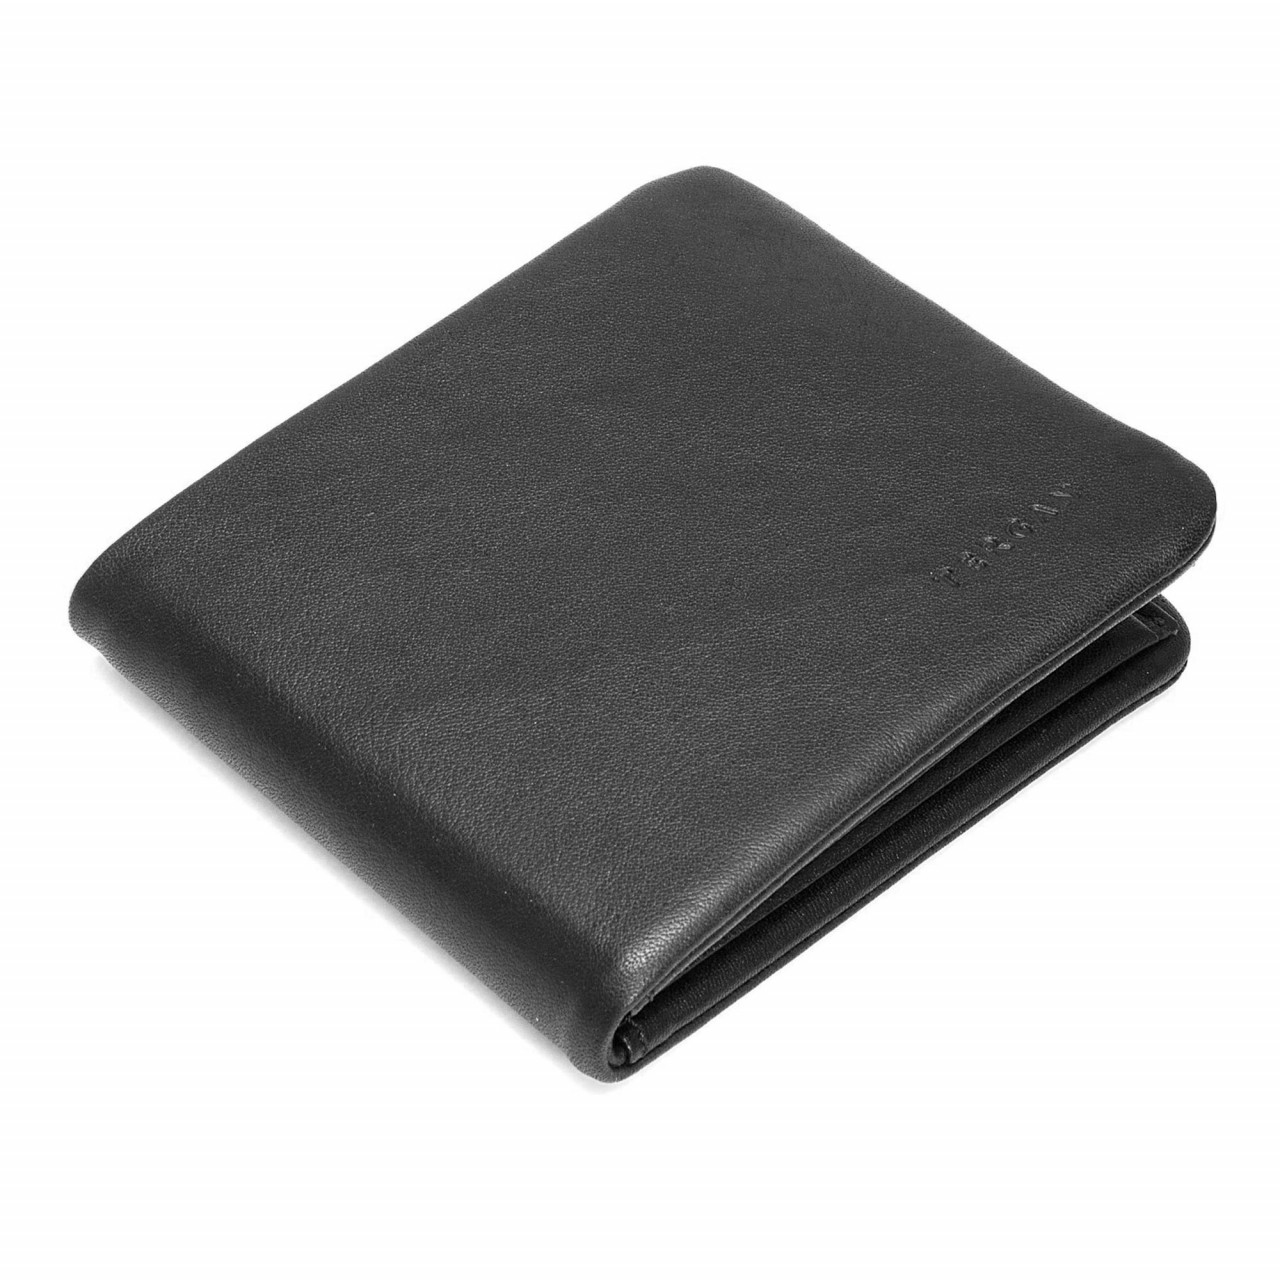 Elegant men's wallet made of soft leather.